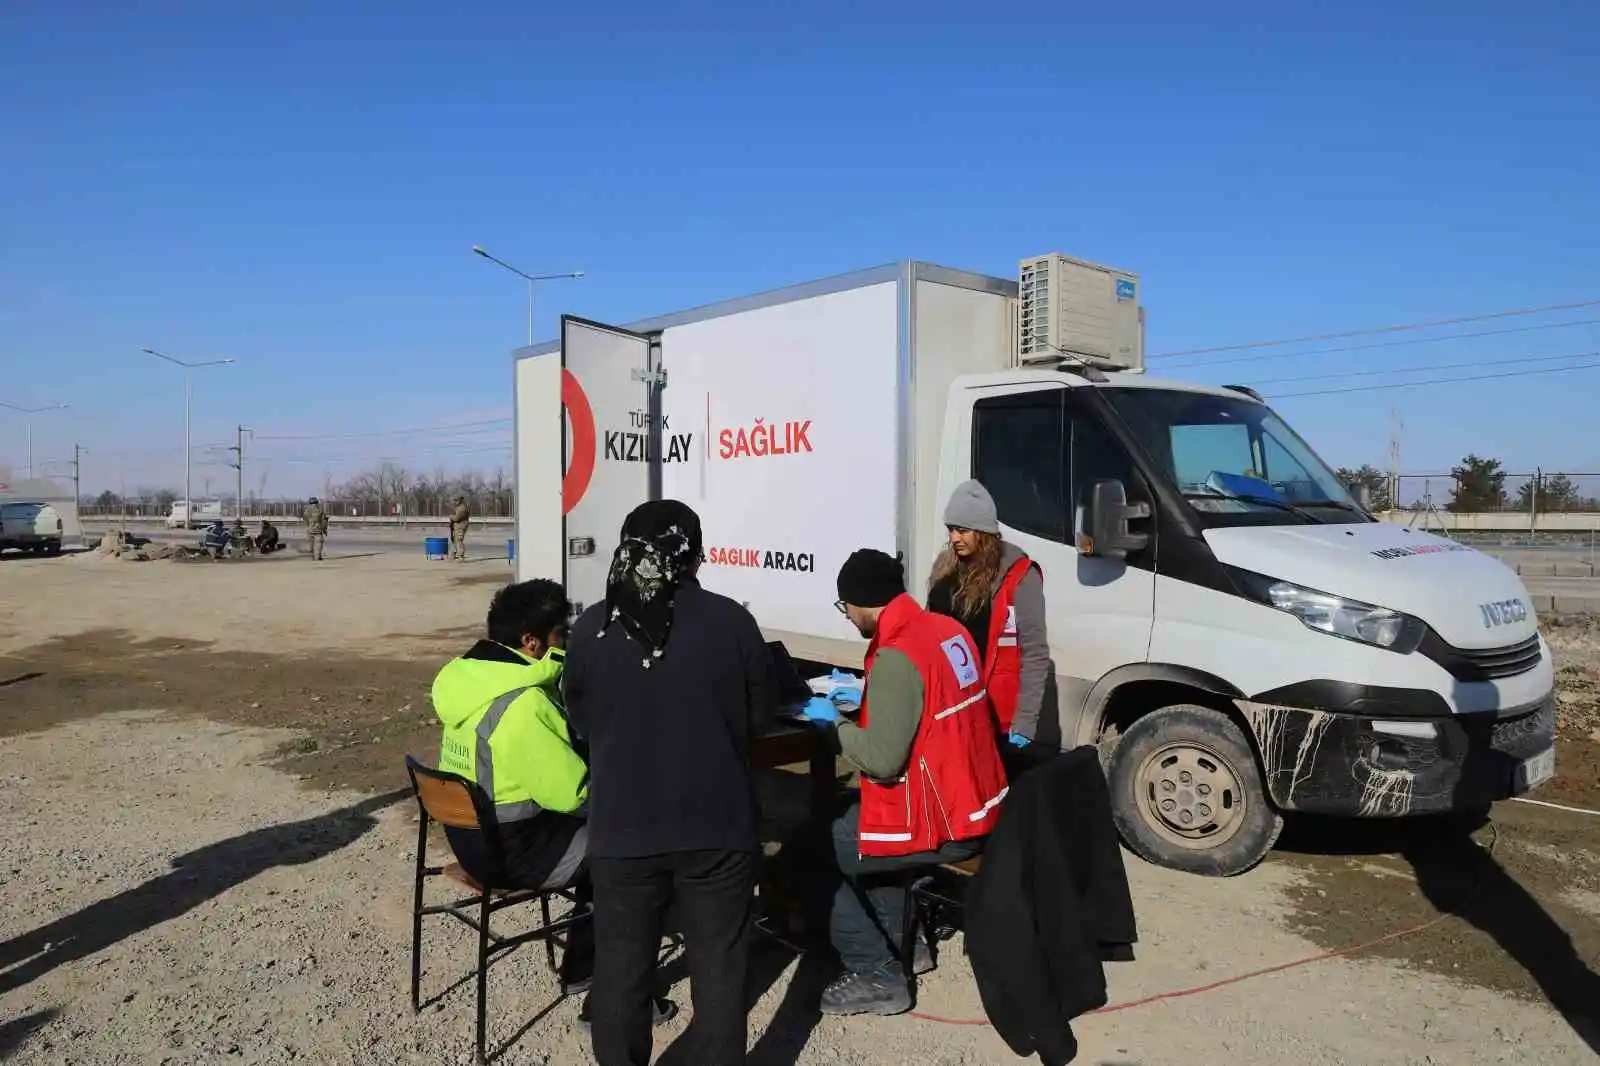 Kızılay mobil sağlık araçları ilk gün 600'den fazla depremzedeye ulaştı
